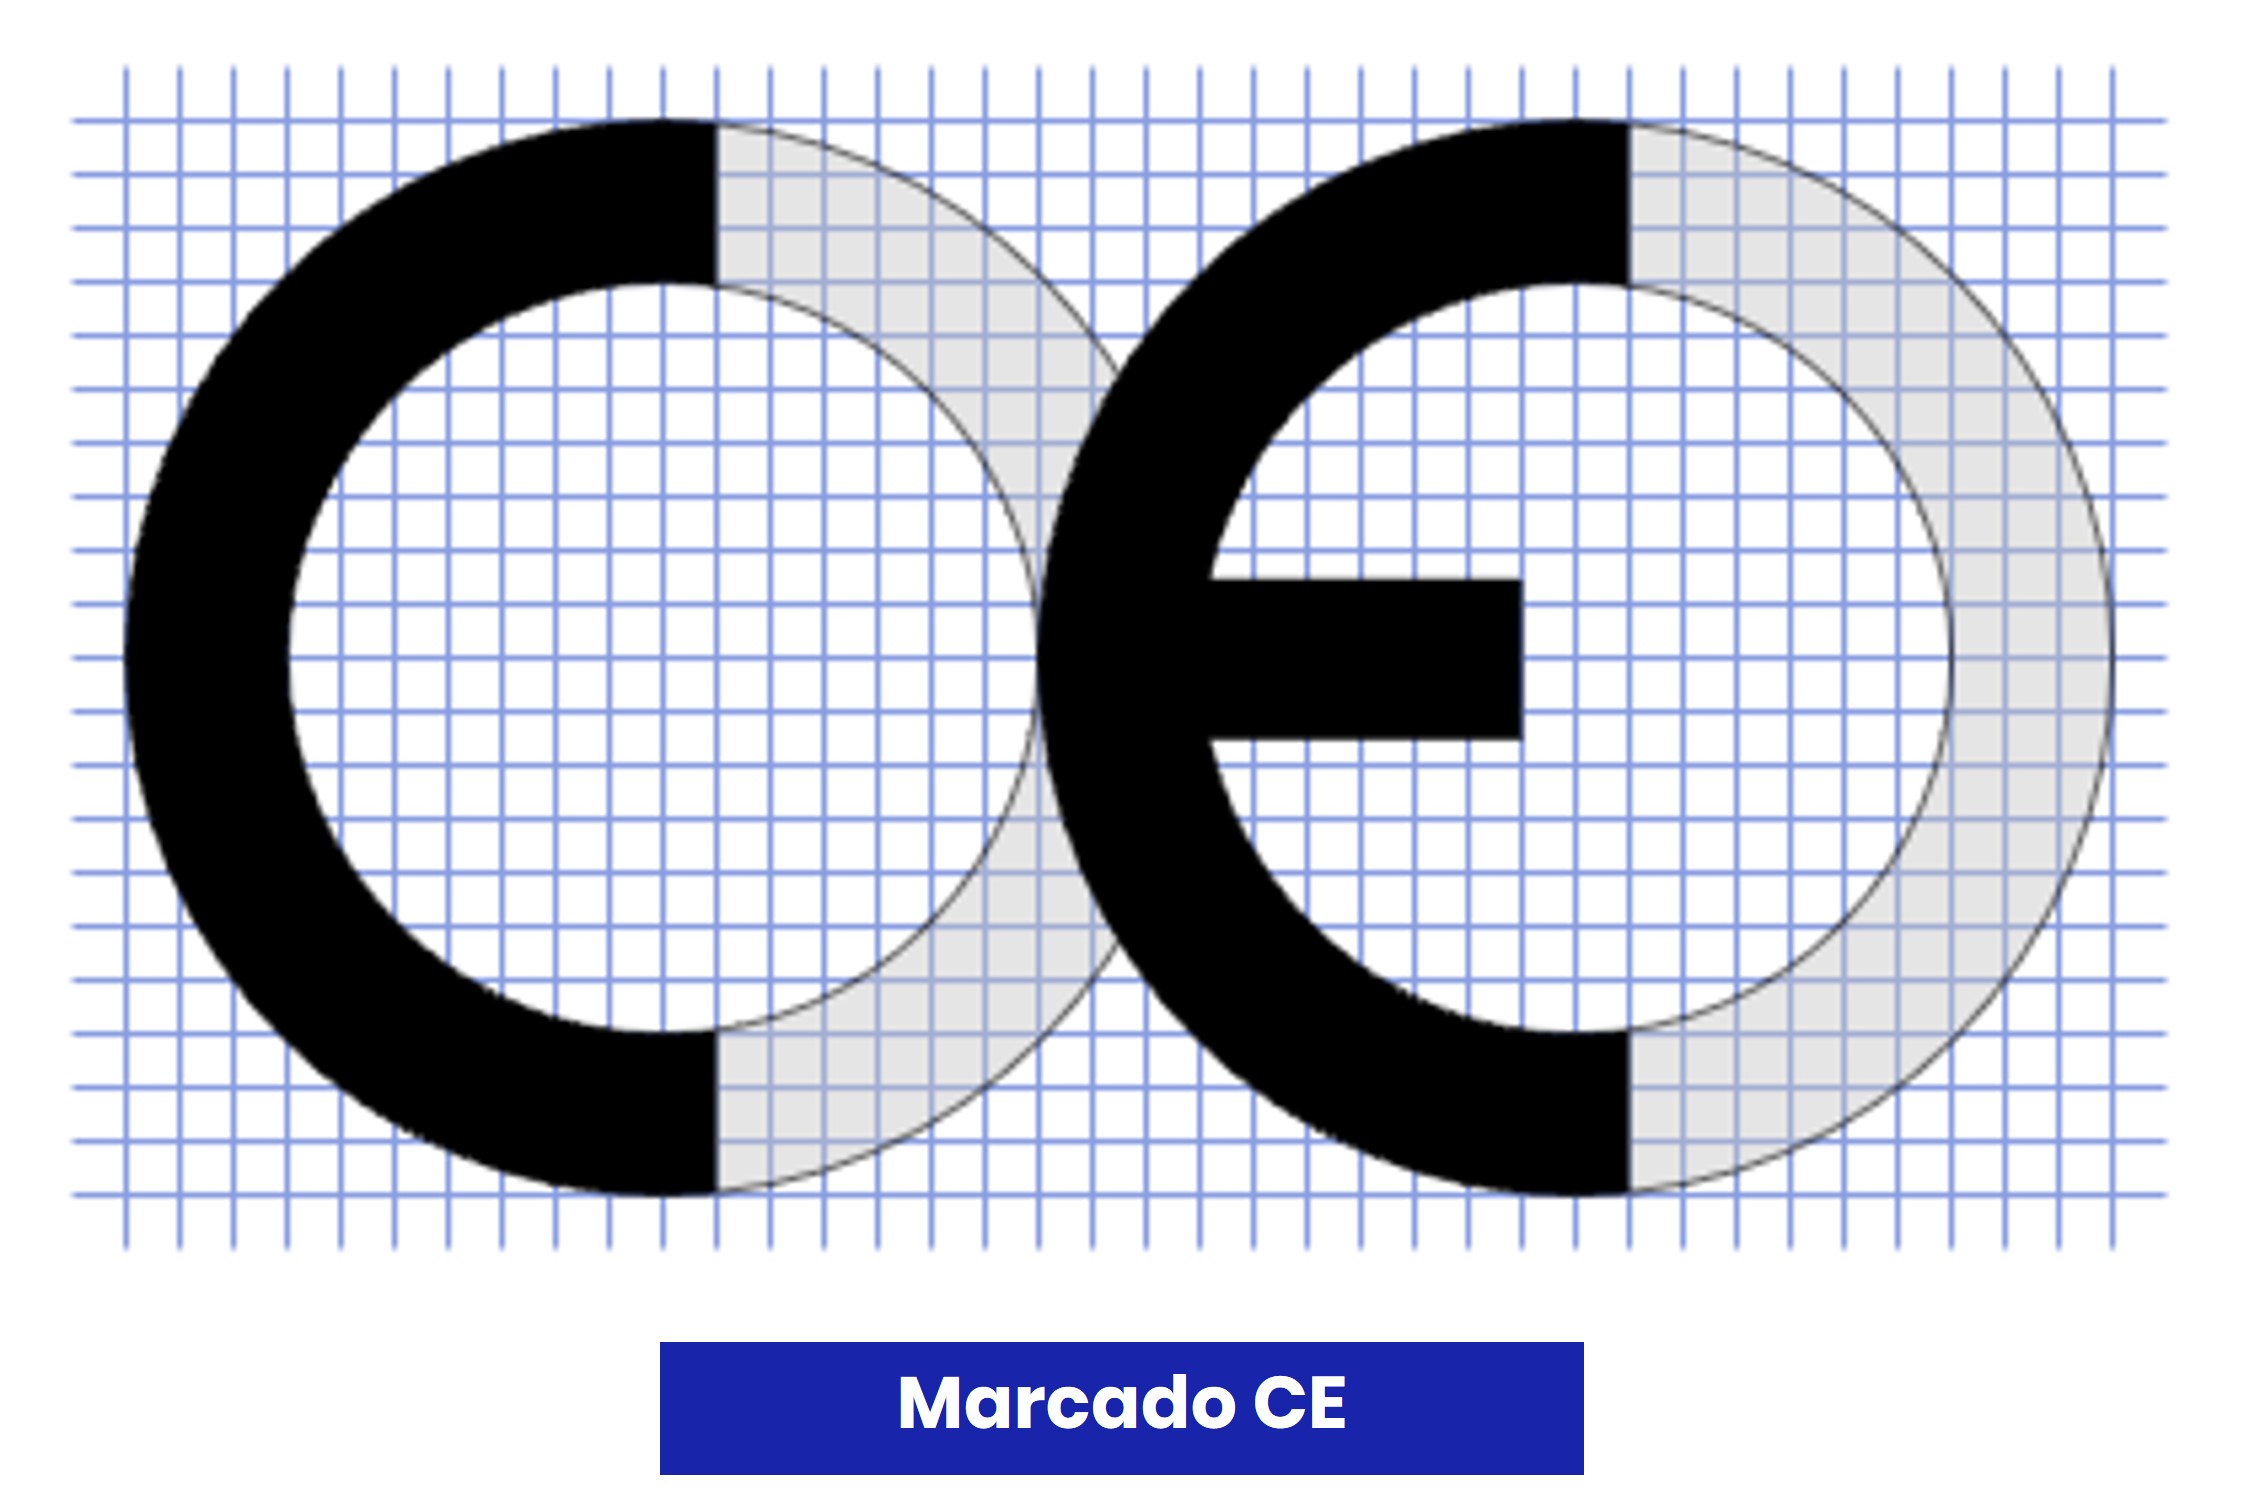 Requisitos de forma, color y separación que deben cumplir las letras del marcado CE